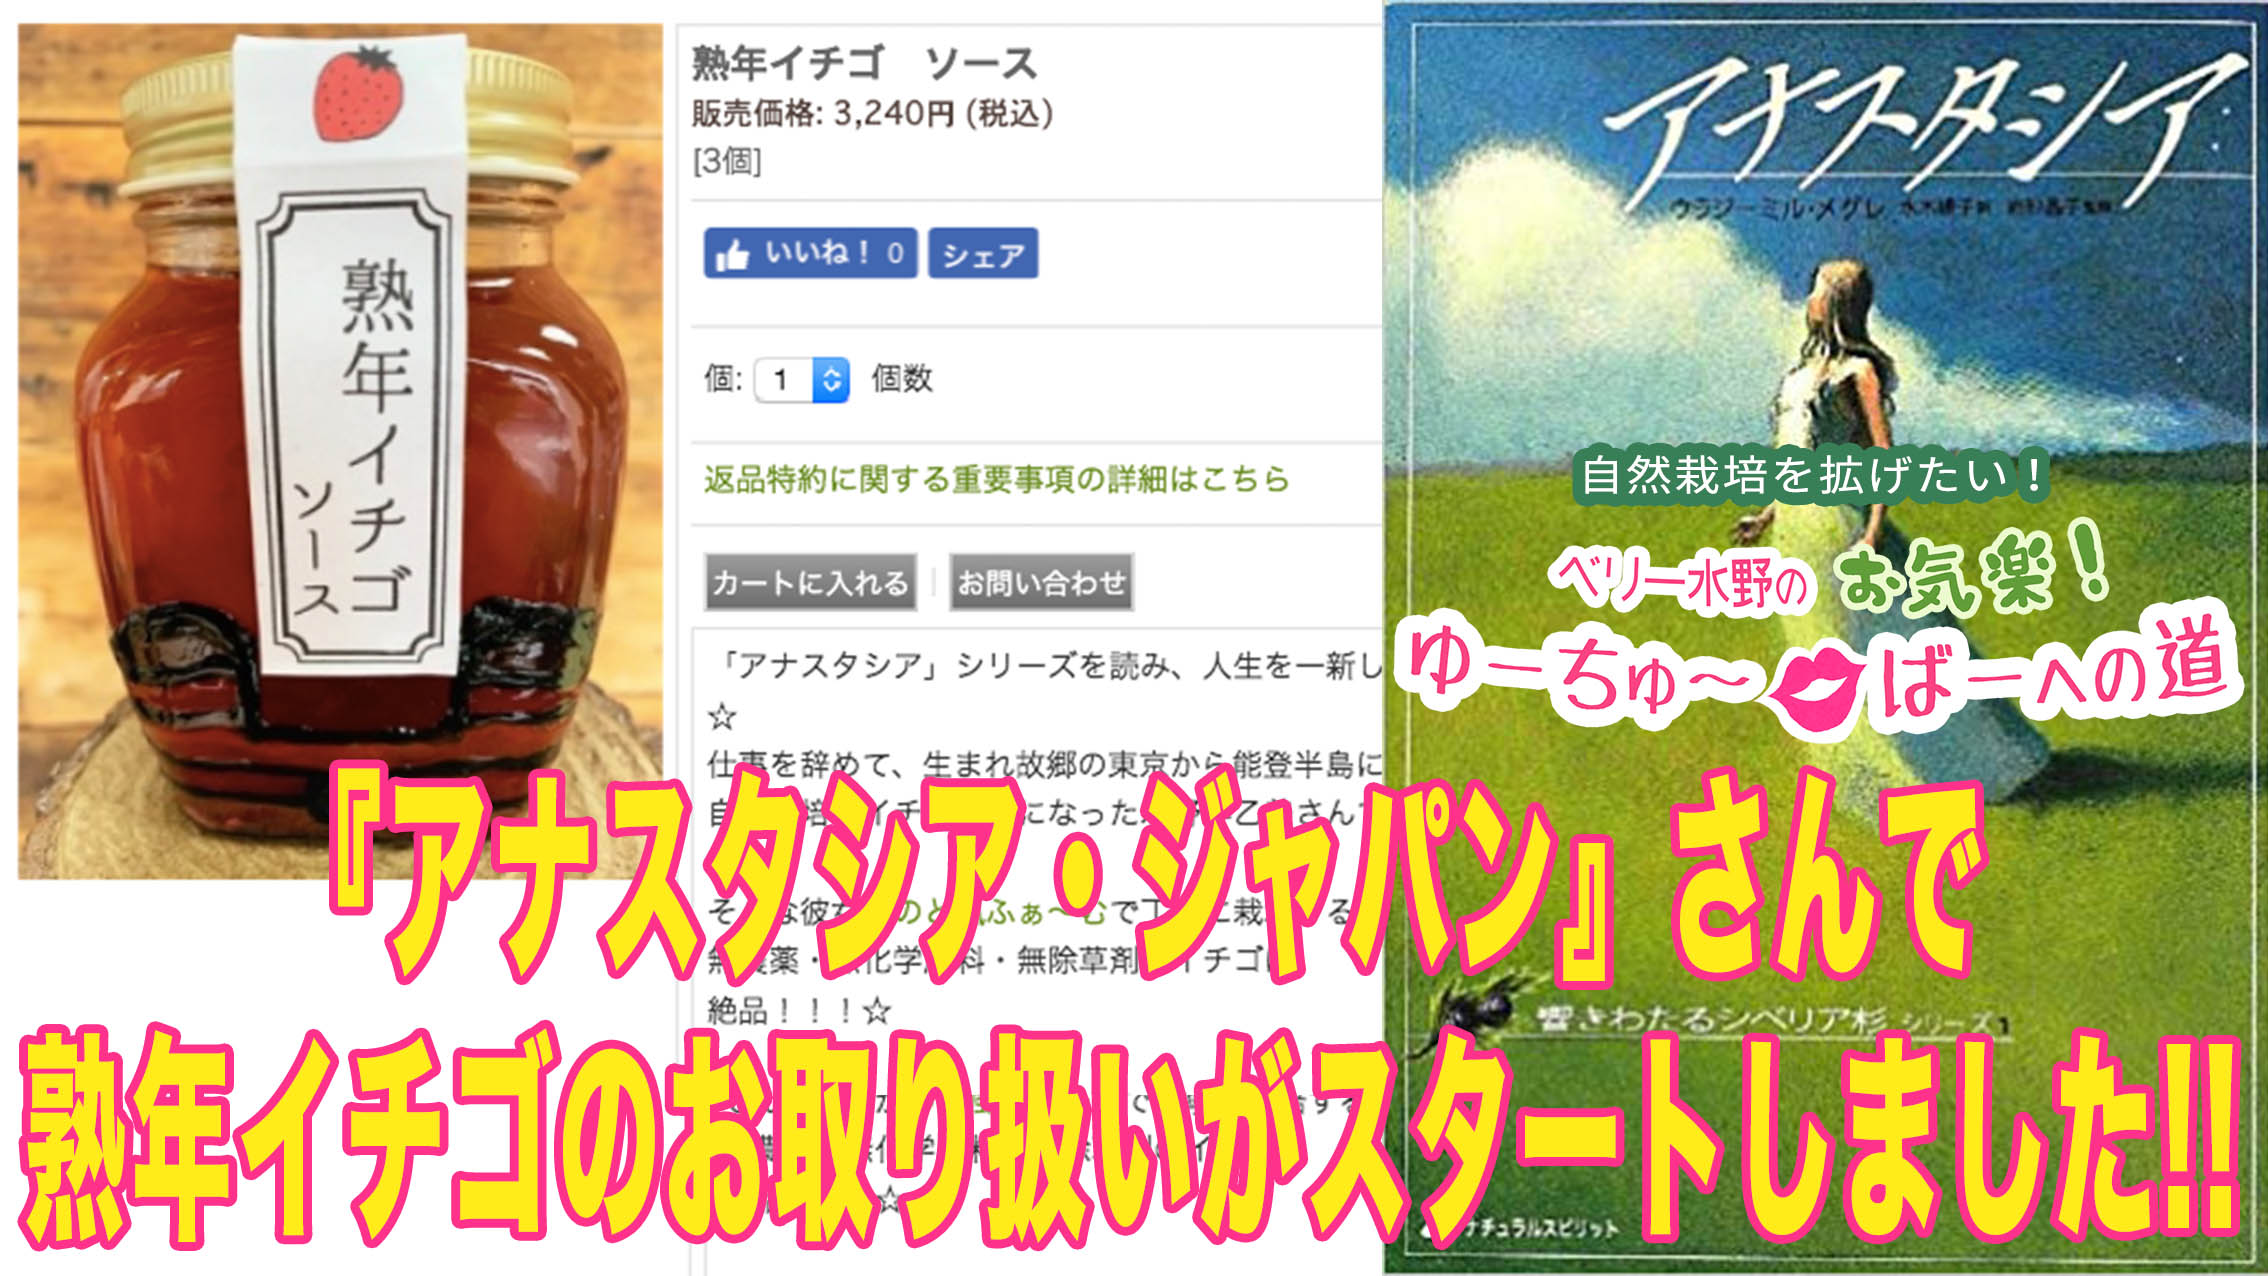 アナスタシア・ジャパン公式サイトにて熟年イチゴのお取り扱いがスタートしました!!